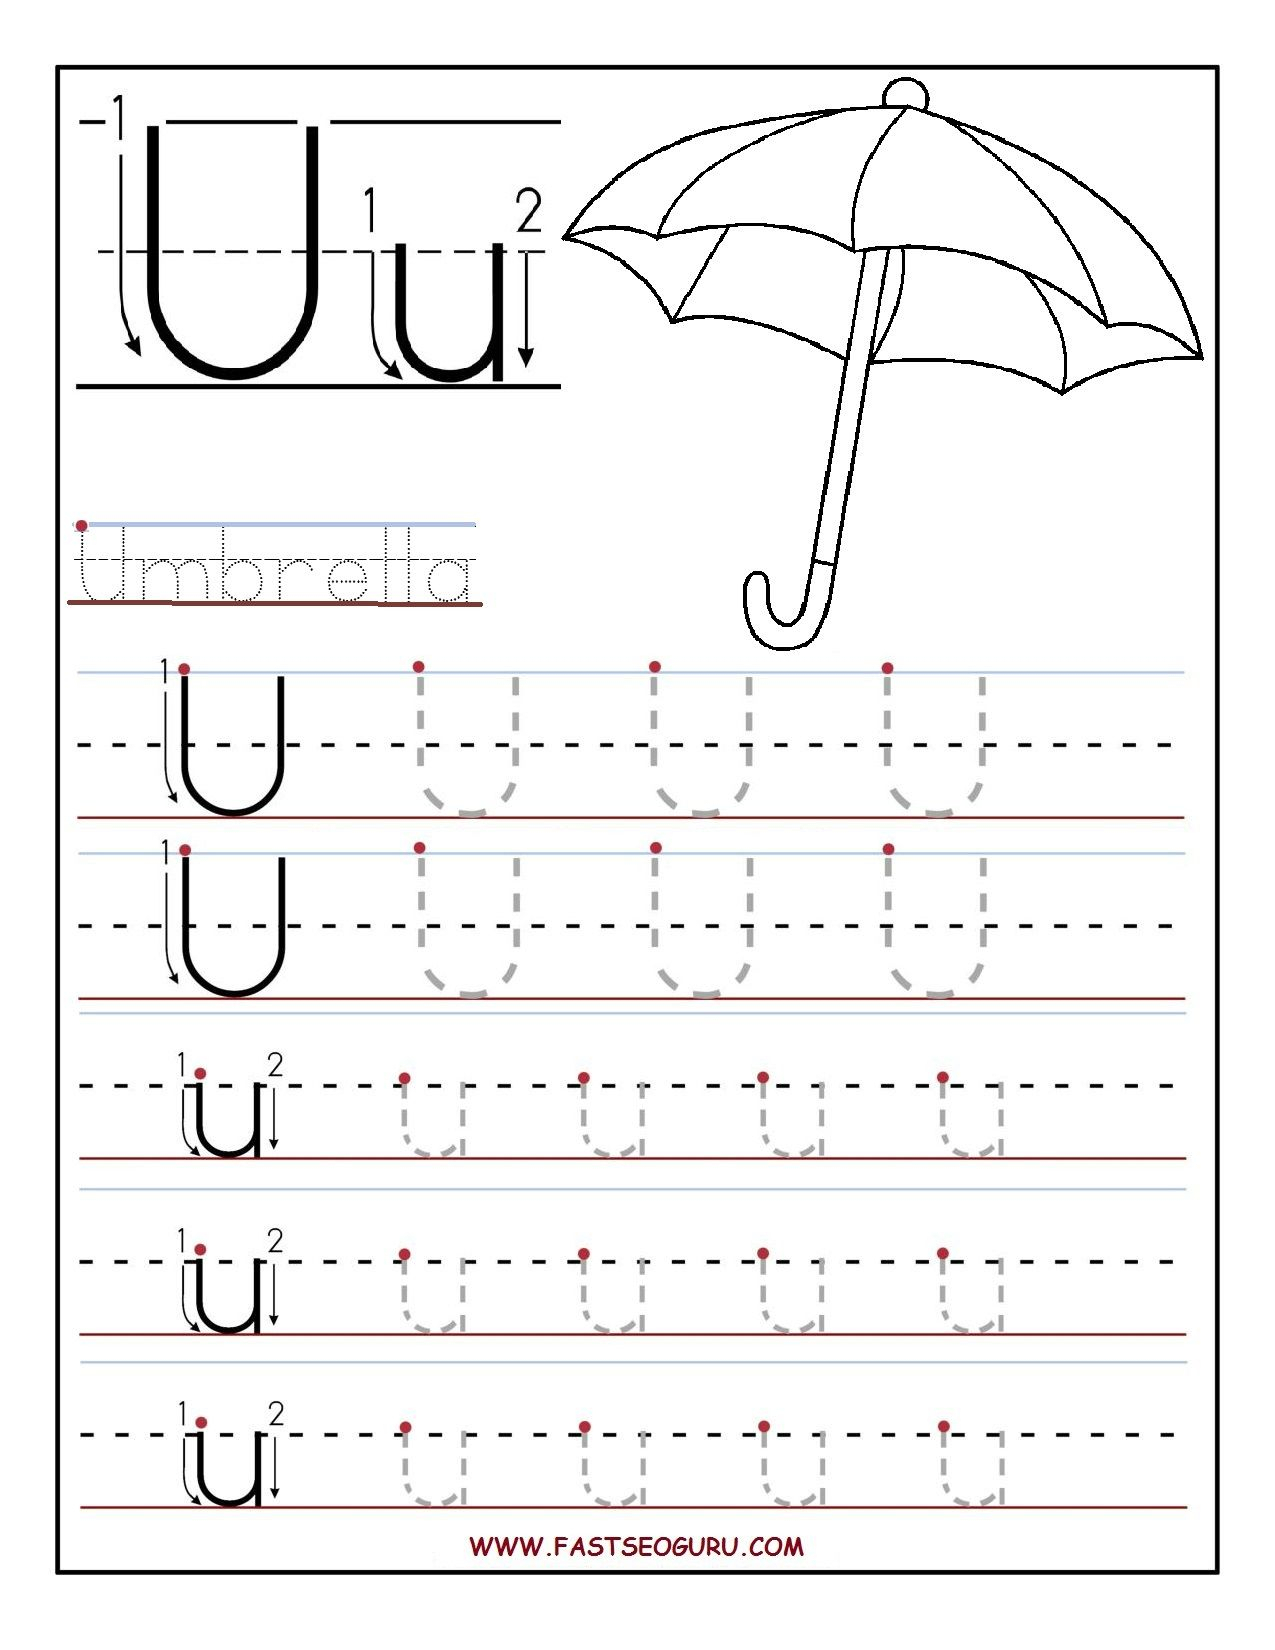 Printable Letter U Tracing Worksheets For Preschool throughout Letter Tracing Worksheets Toddlers